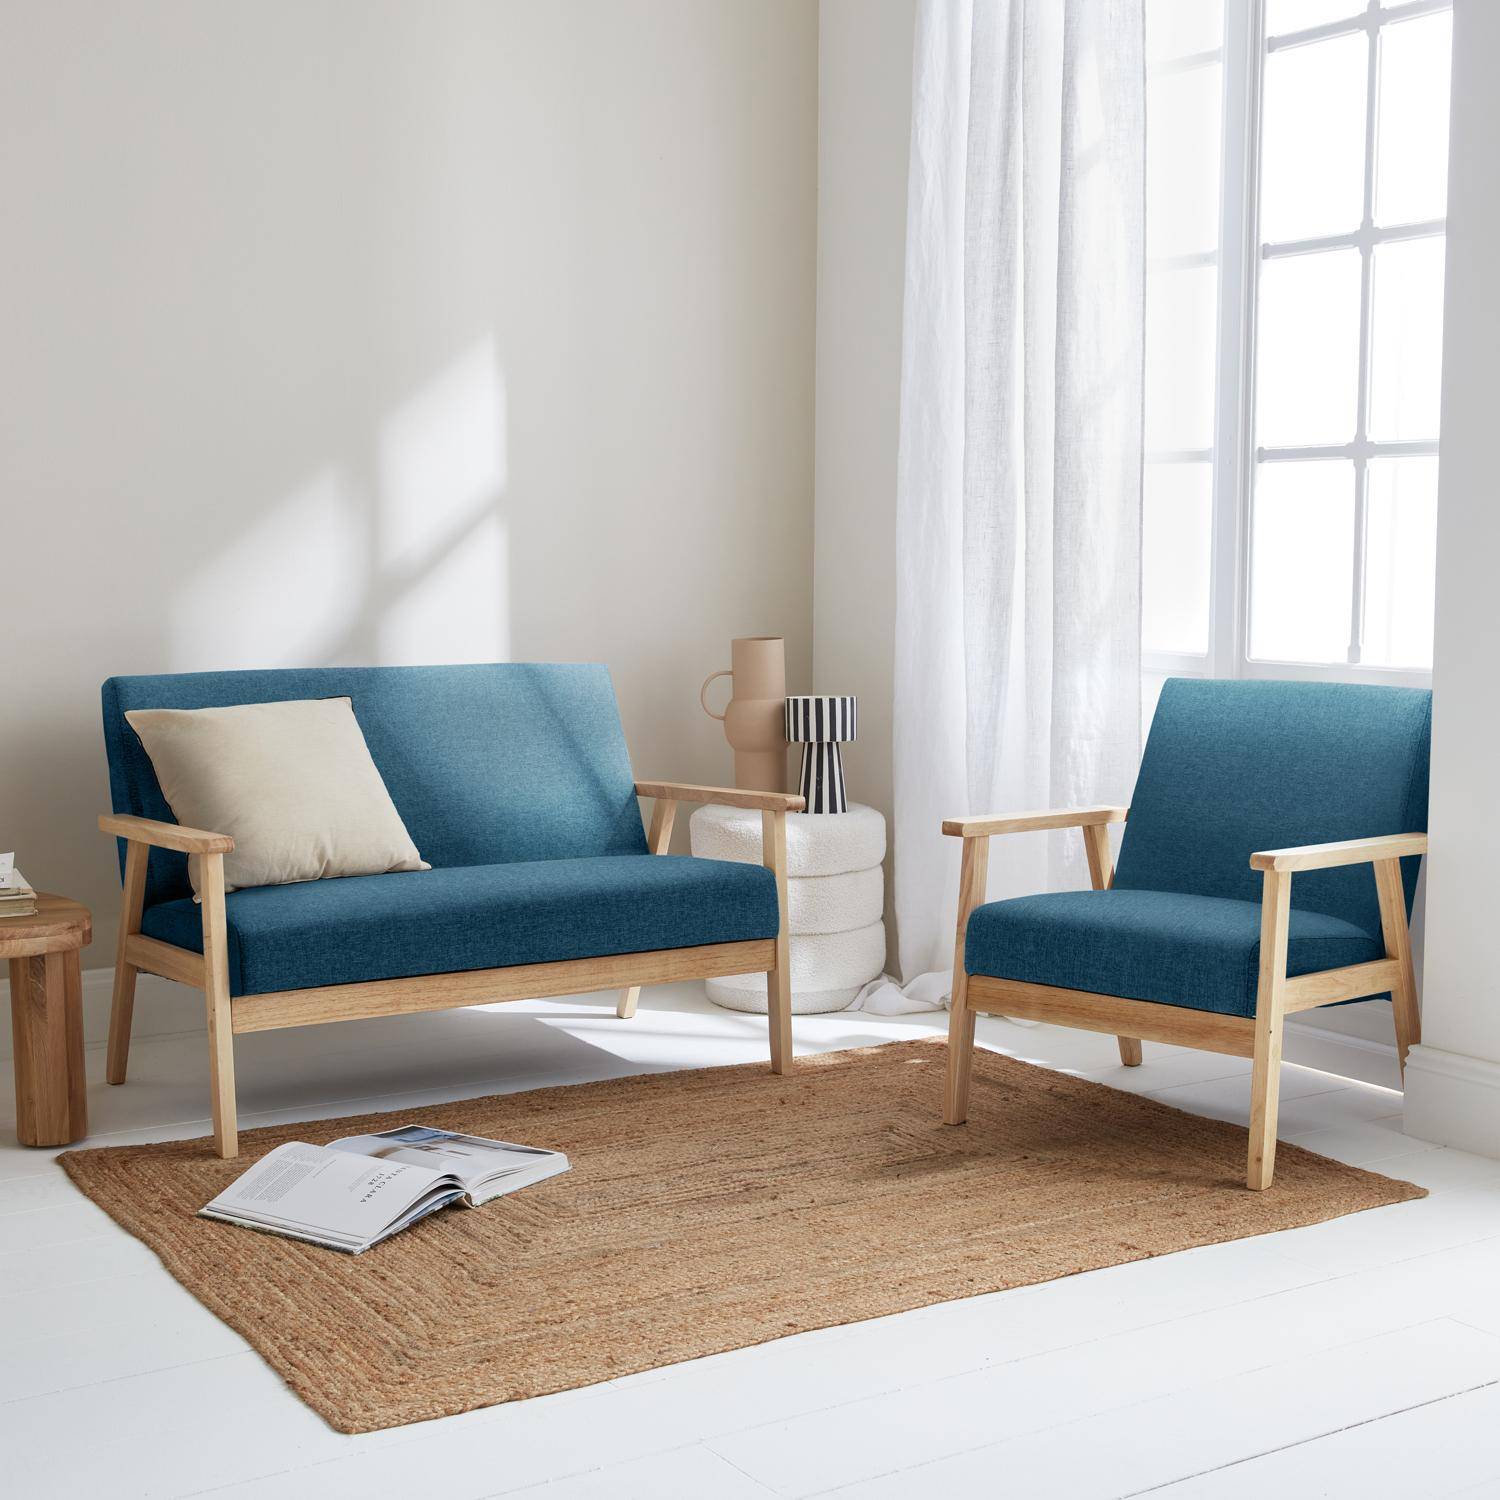 Banquette et fauteuil scandinave en bois et tissu bleu pétrole L 114 x l 69,5 x H 73cm,sweeek,Photo1